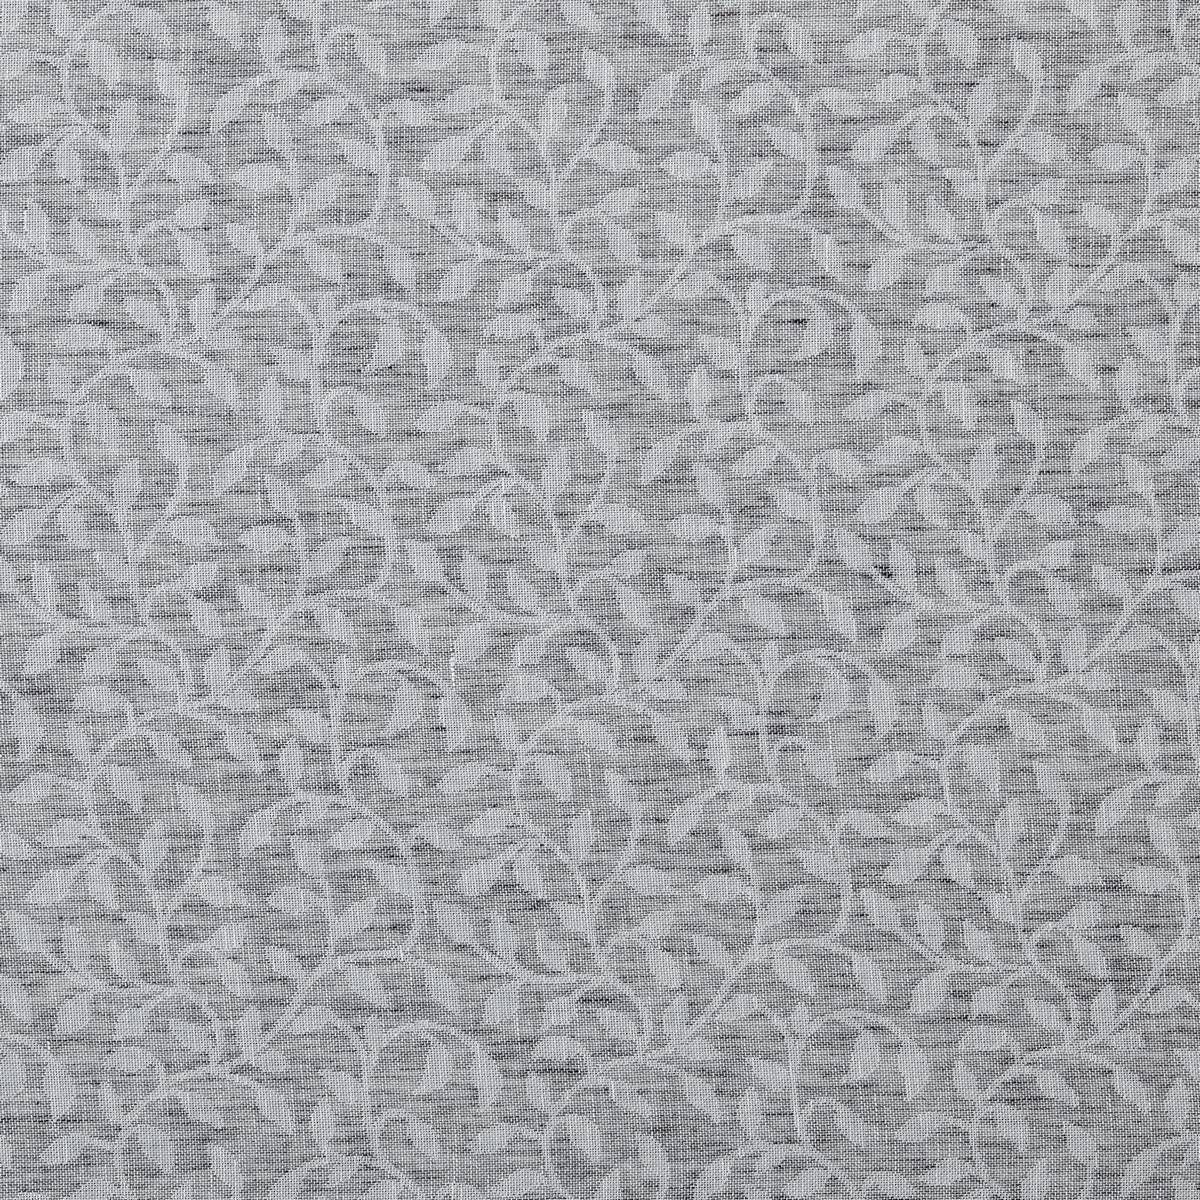 Marbury Silver Fabric by Ashley Wilde